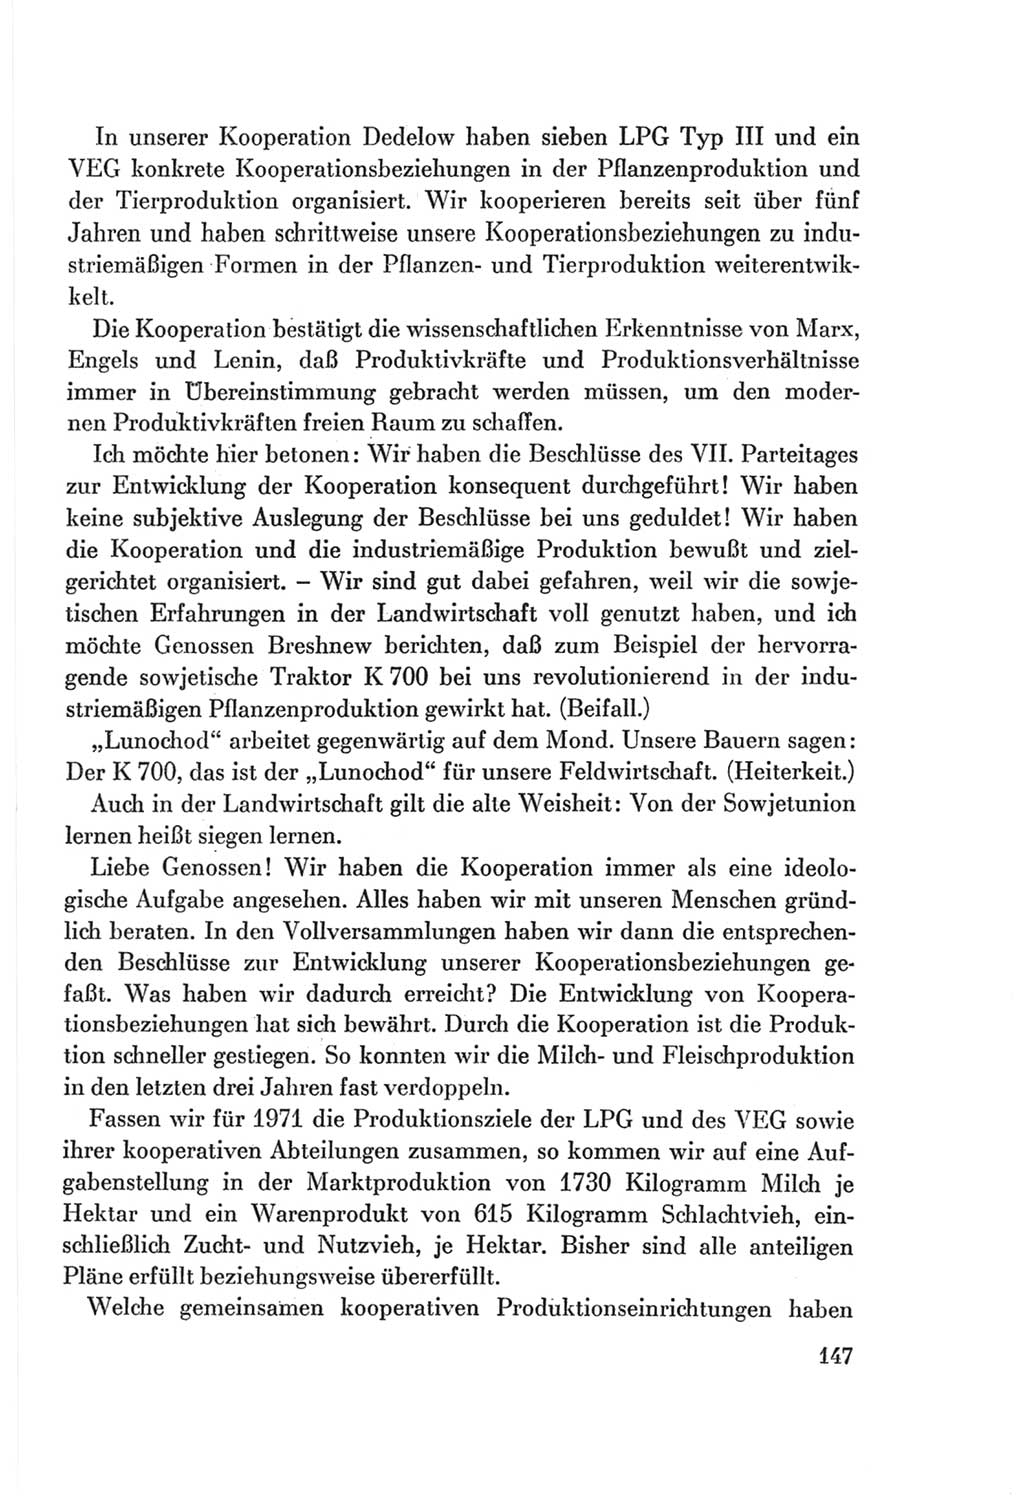 Protokoll der Verhandlungen des Ⅷ. Parteitages der Sozialistischen Einheitspartei Deutschlands (SED) [Deutsche Demokratische Republik (DDR)] 1971, Band 1, Seite 147 (Prot. Verh. Ⅷ. PT SED DDR 1971, Bd. 1, S. 147)